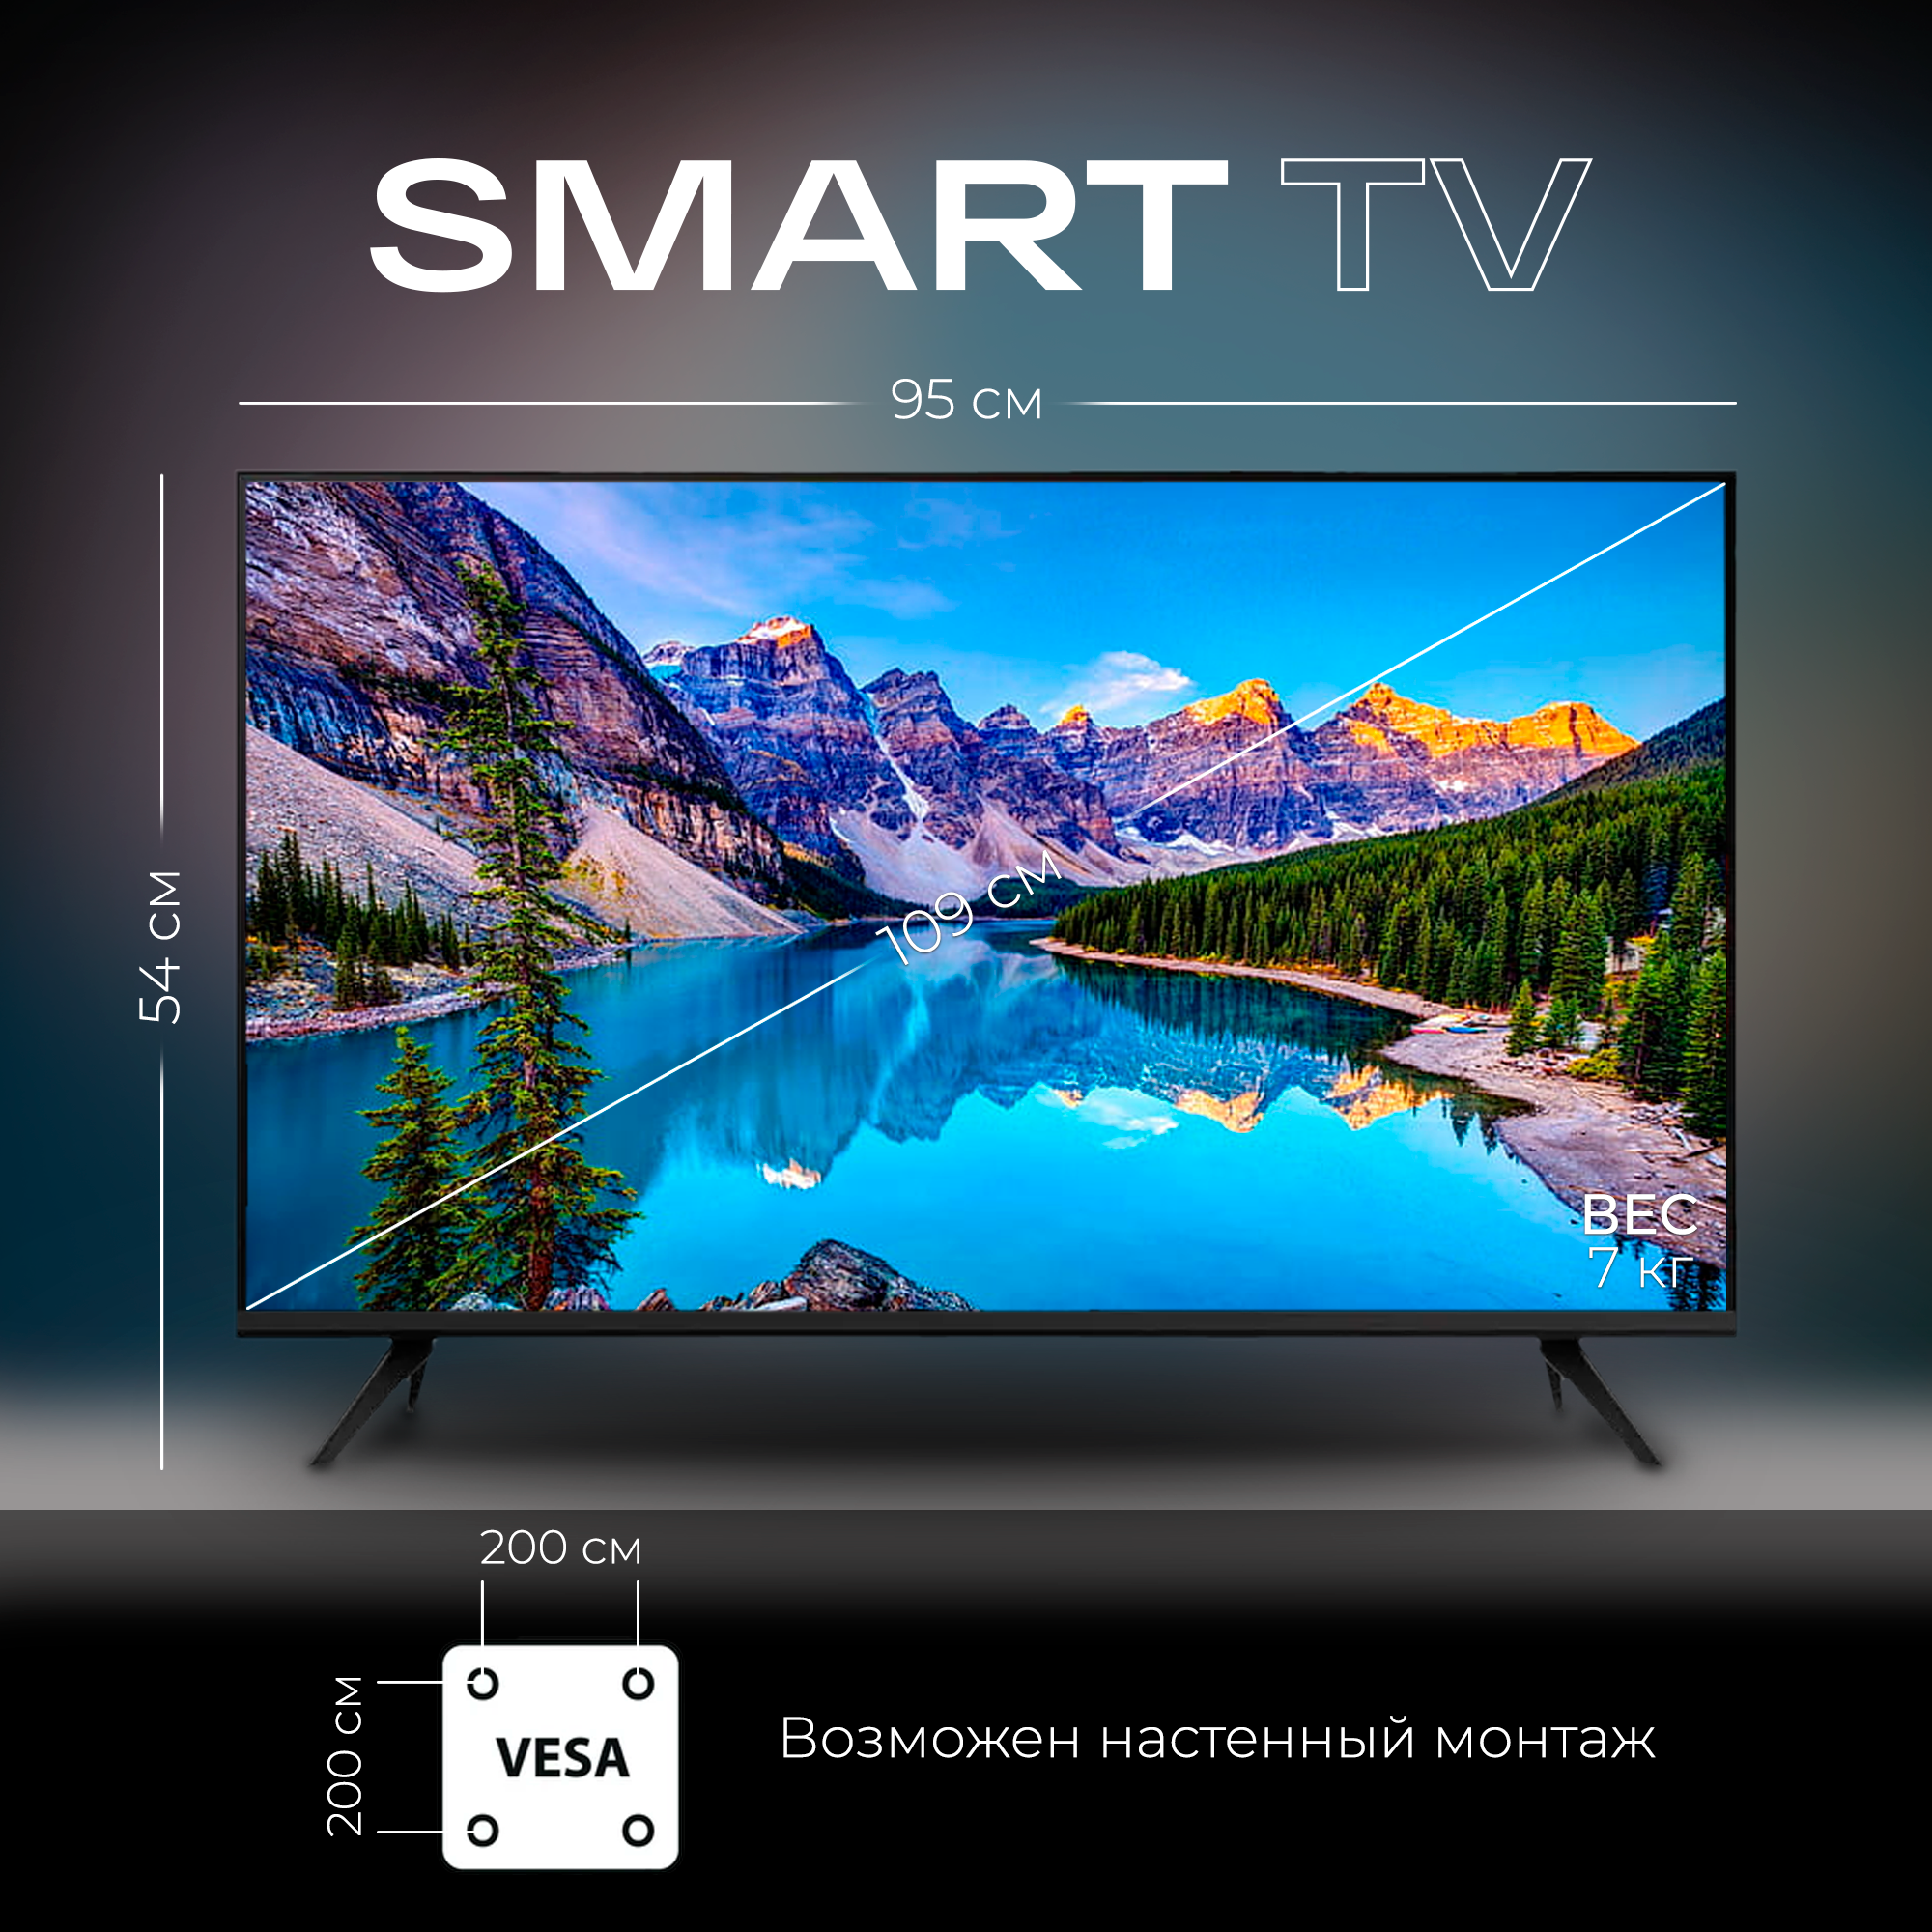 Смарт телевизор Smart TV 43 дюйма (109см) FullHD